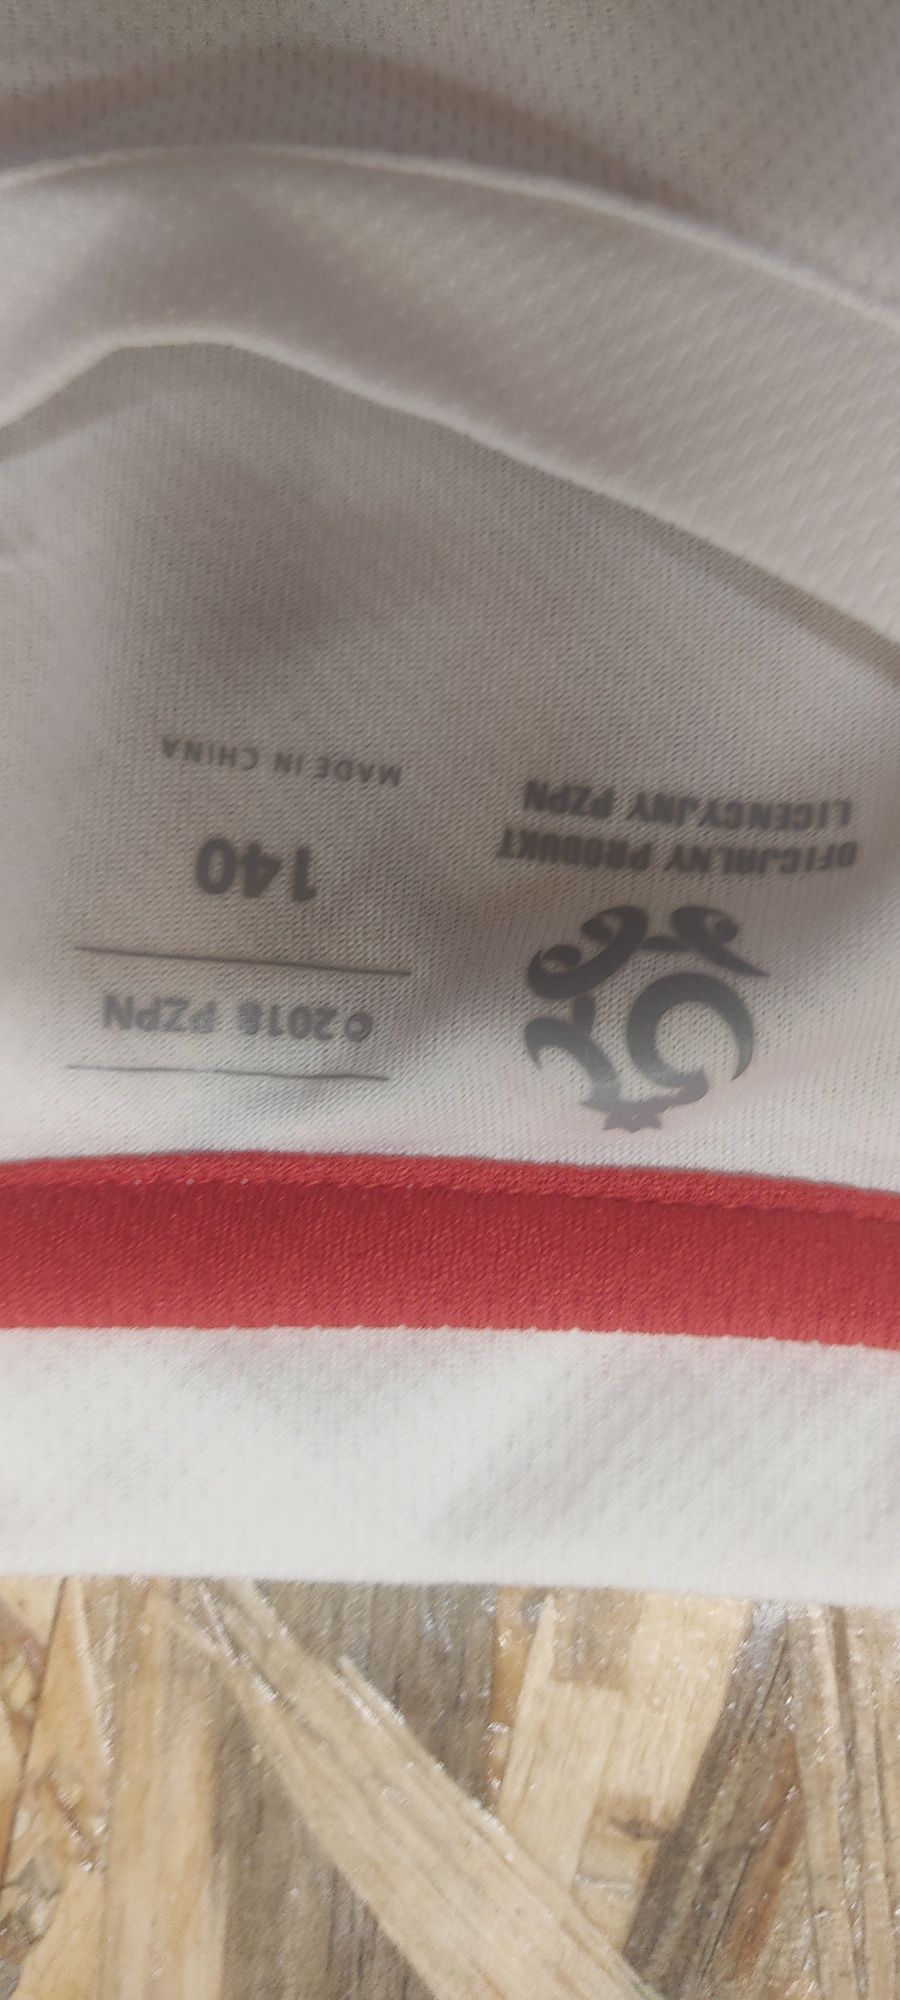 Oficjalna koszulka reprezentacji Polski chłopięca